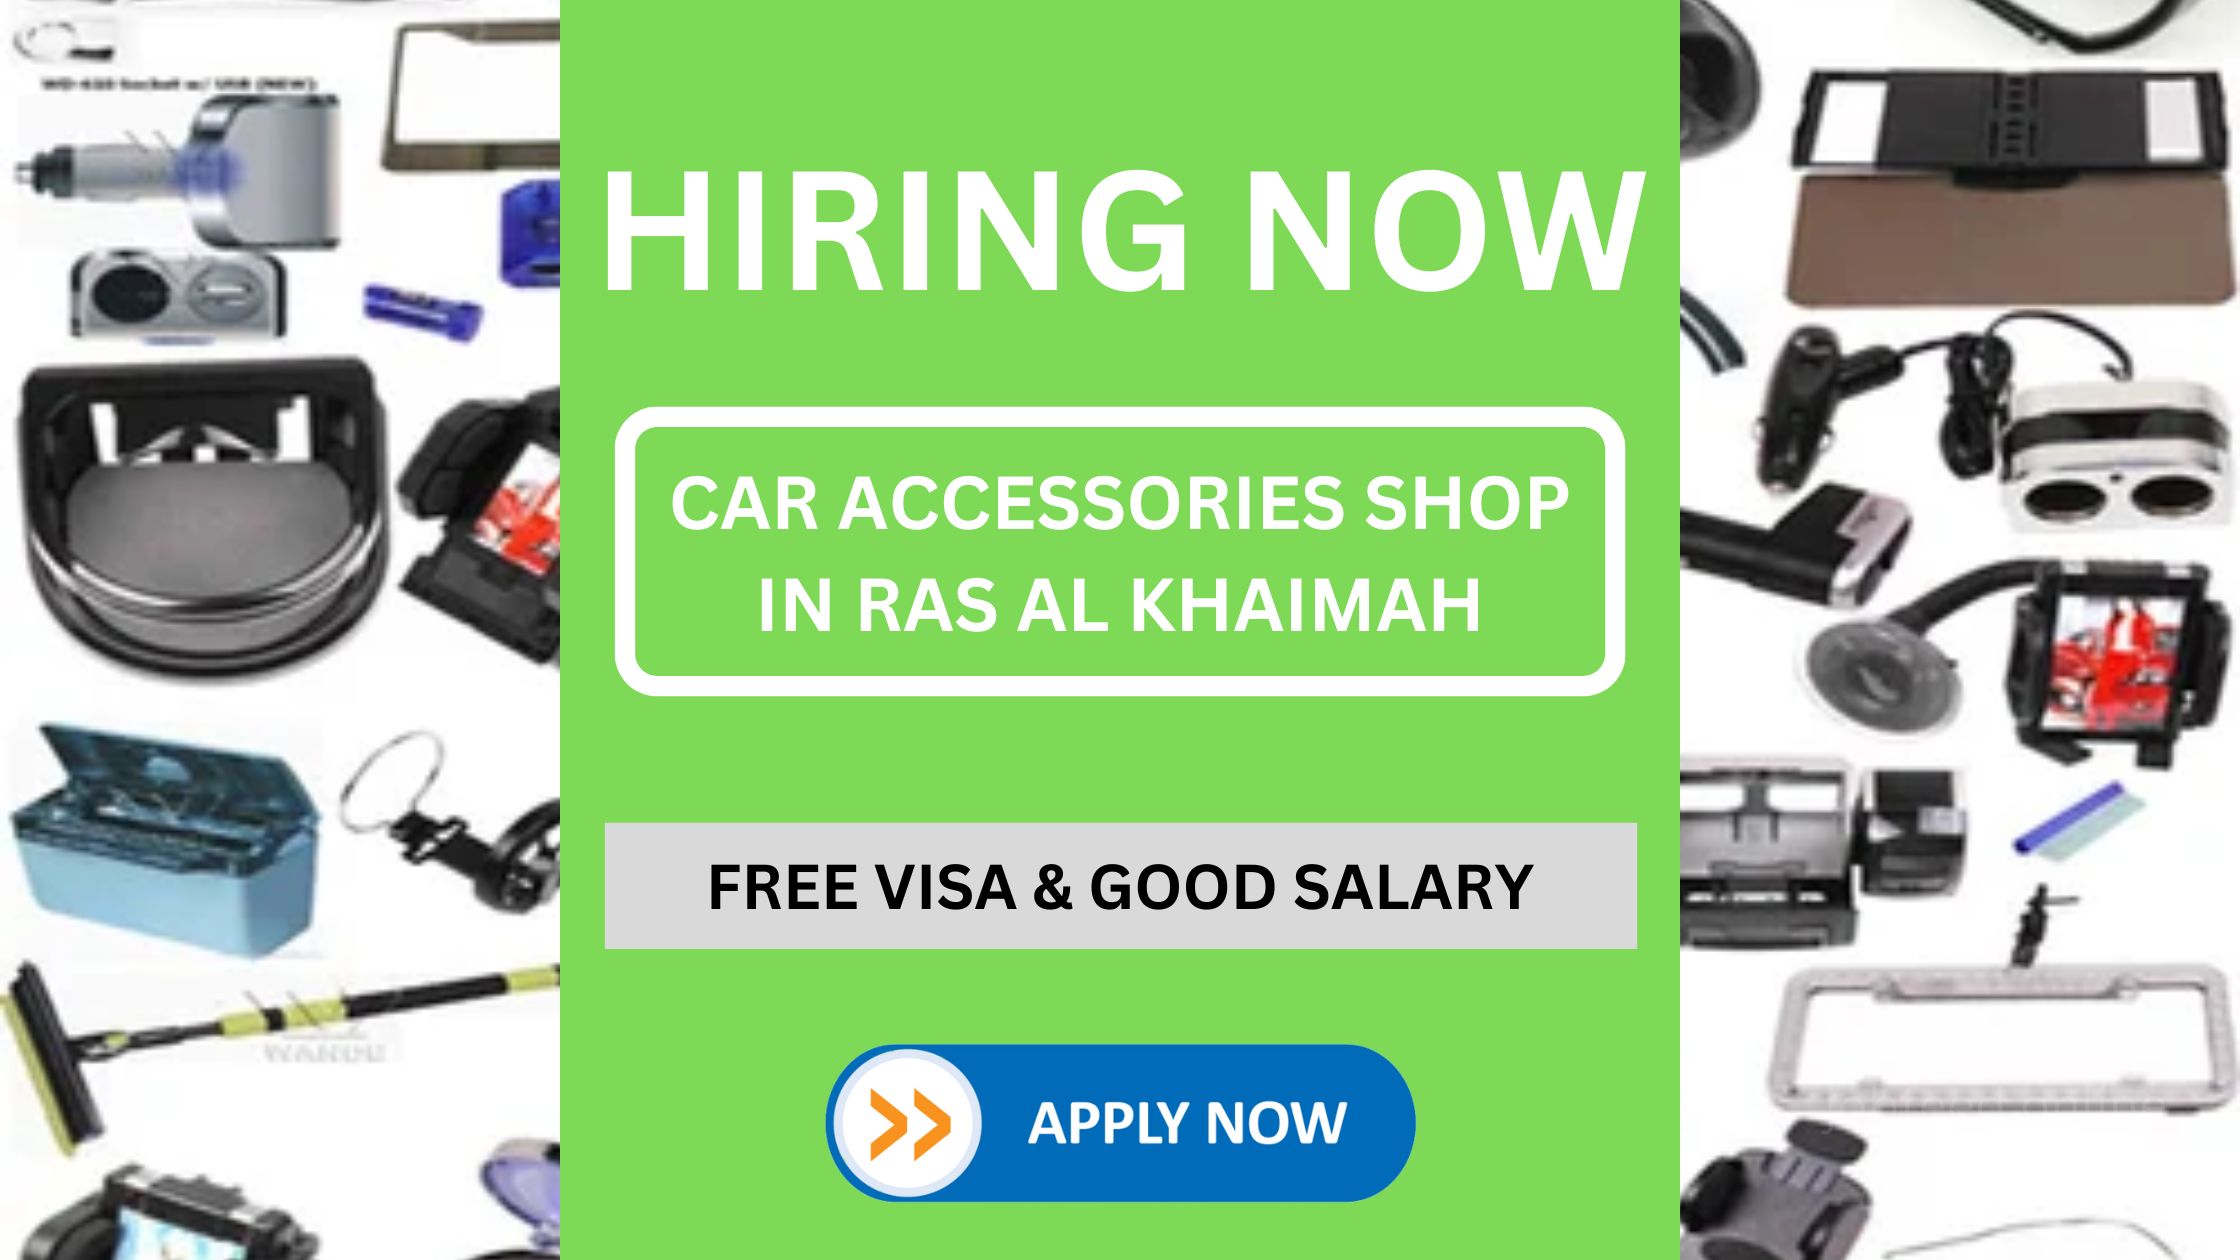 Car Accessories Shop in Ras al Khaimah Hiring